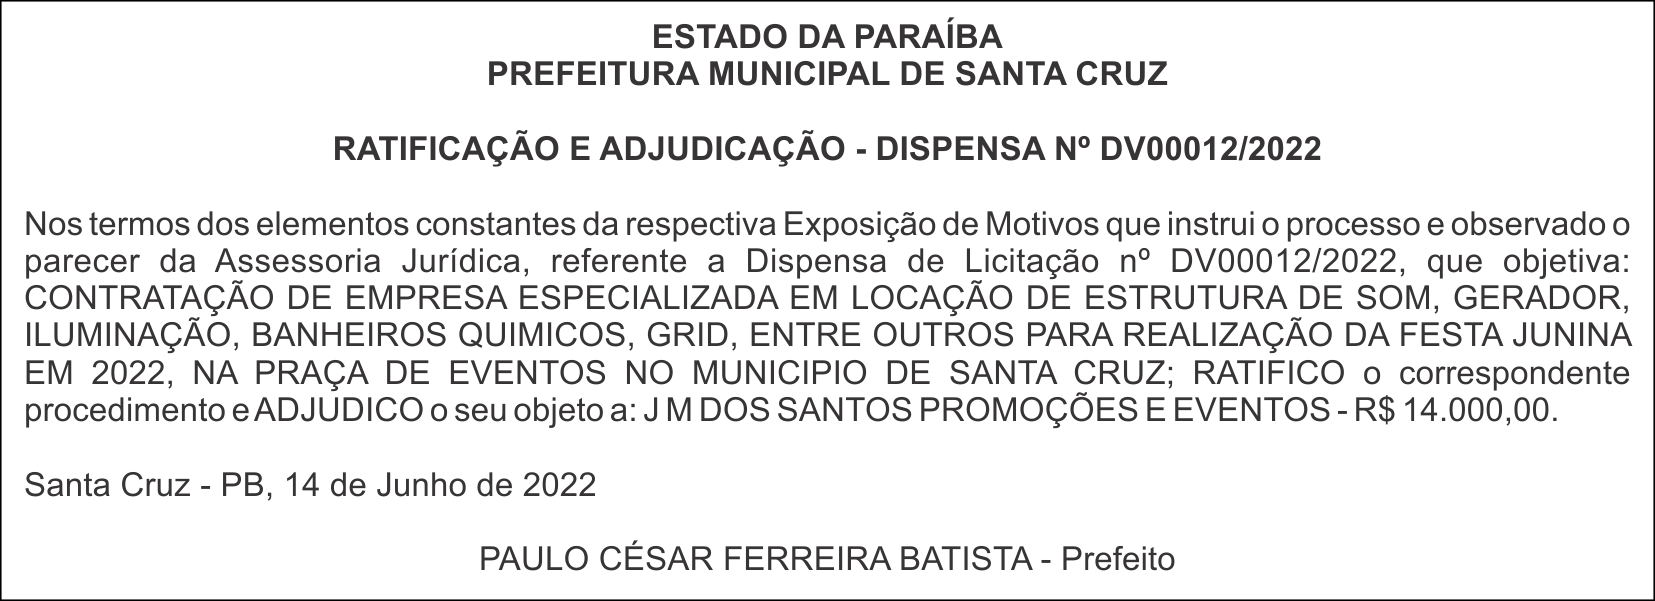 PREFEITURA MUNICIPAL DE SANTA CRUZ – RATIFICAÇÃO E ADJUDICAÇÃO – DISPENSA Nº DV00012/2022